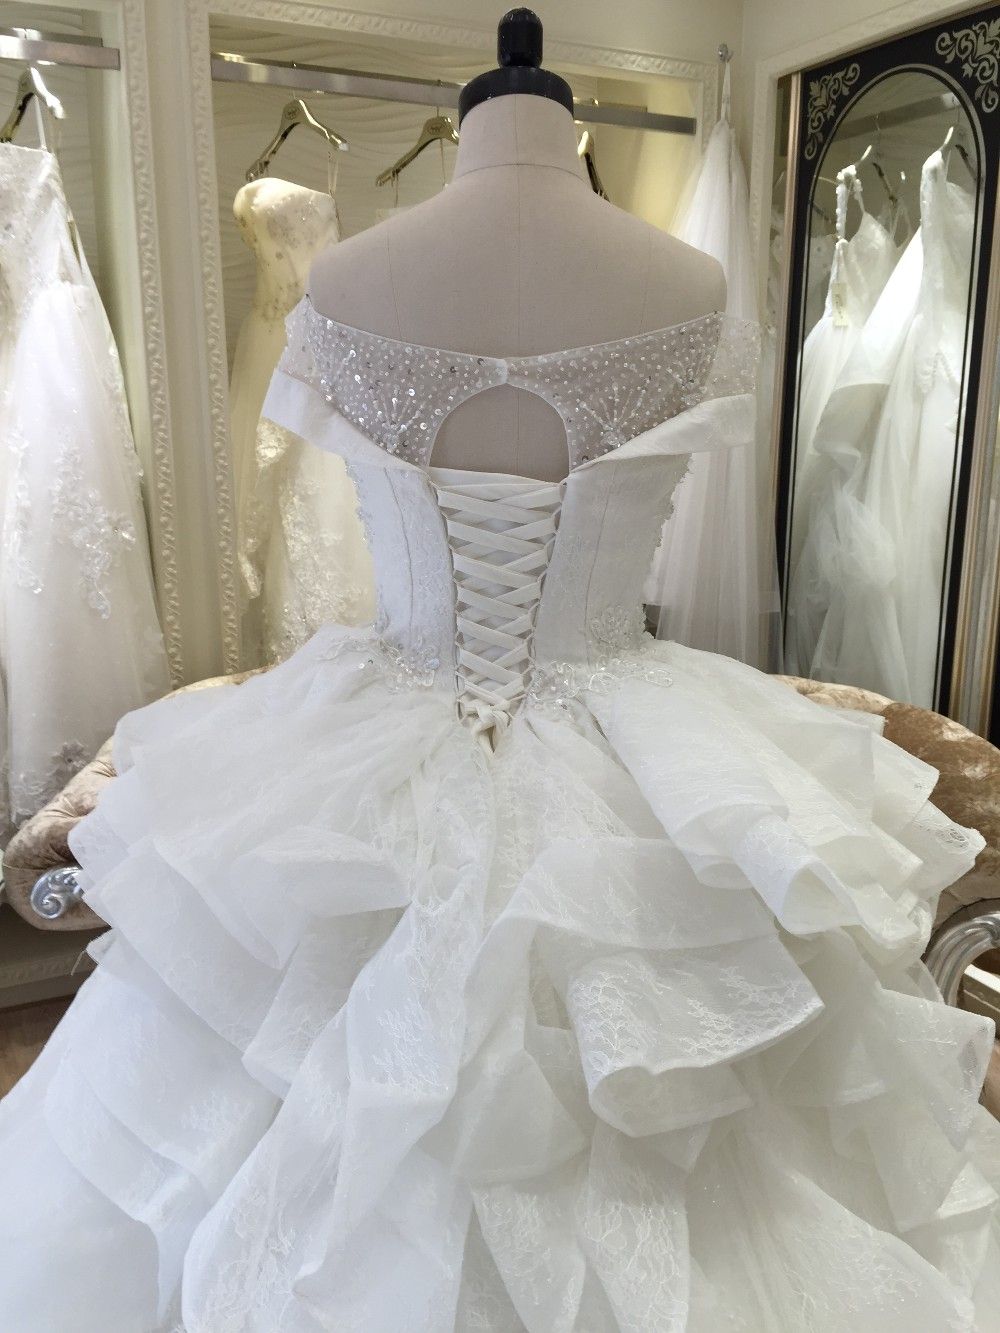 2017 nouveau design robe de bal robe de mariage réel image pour les femmes grosses décolleté bustier chapelle train